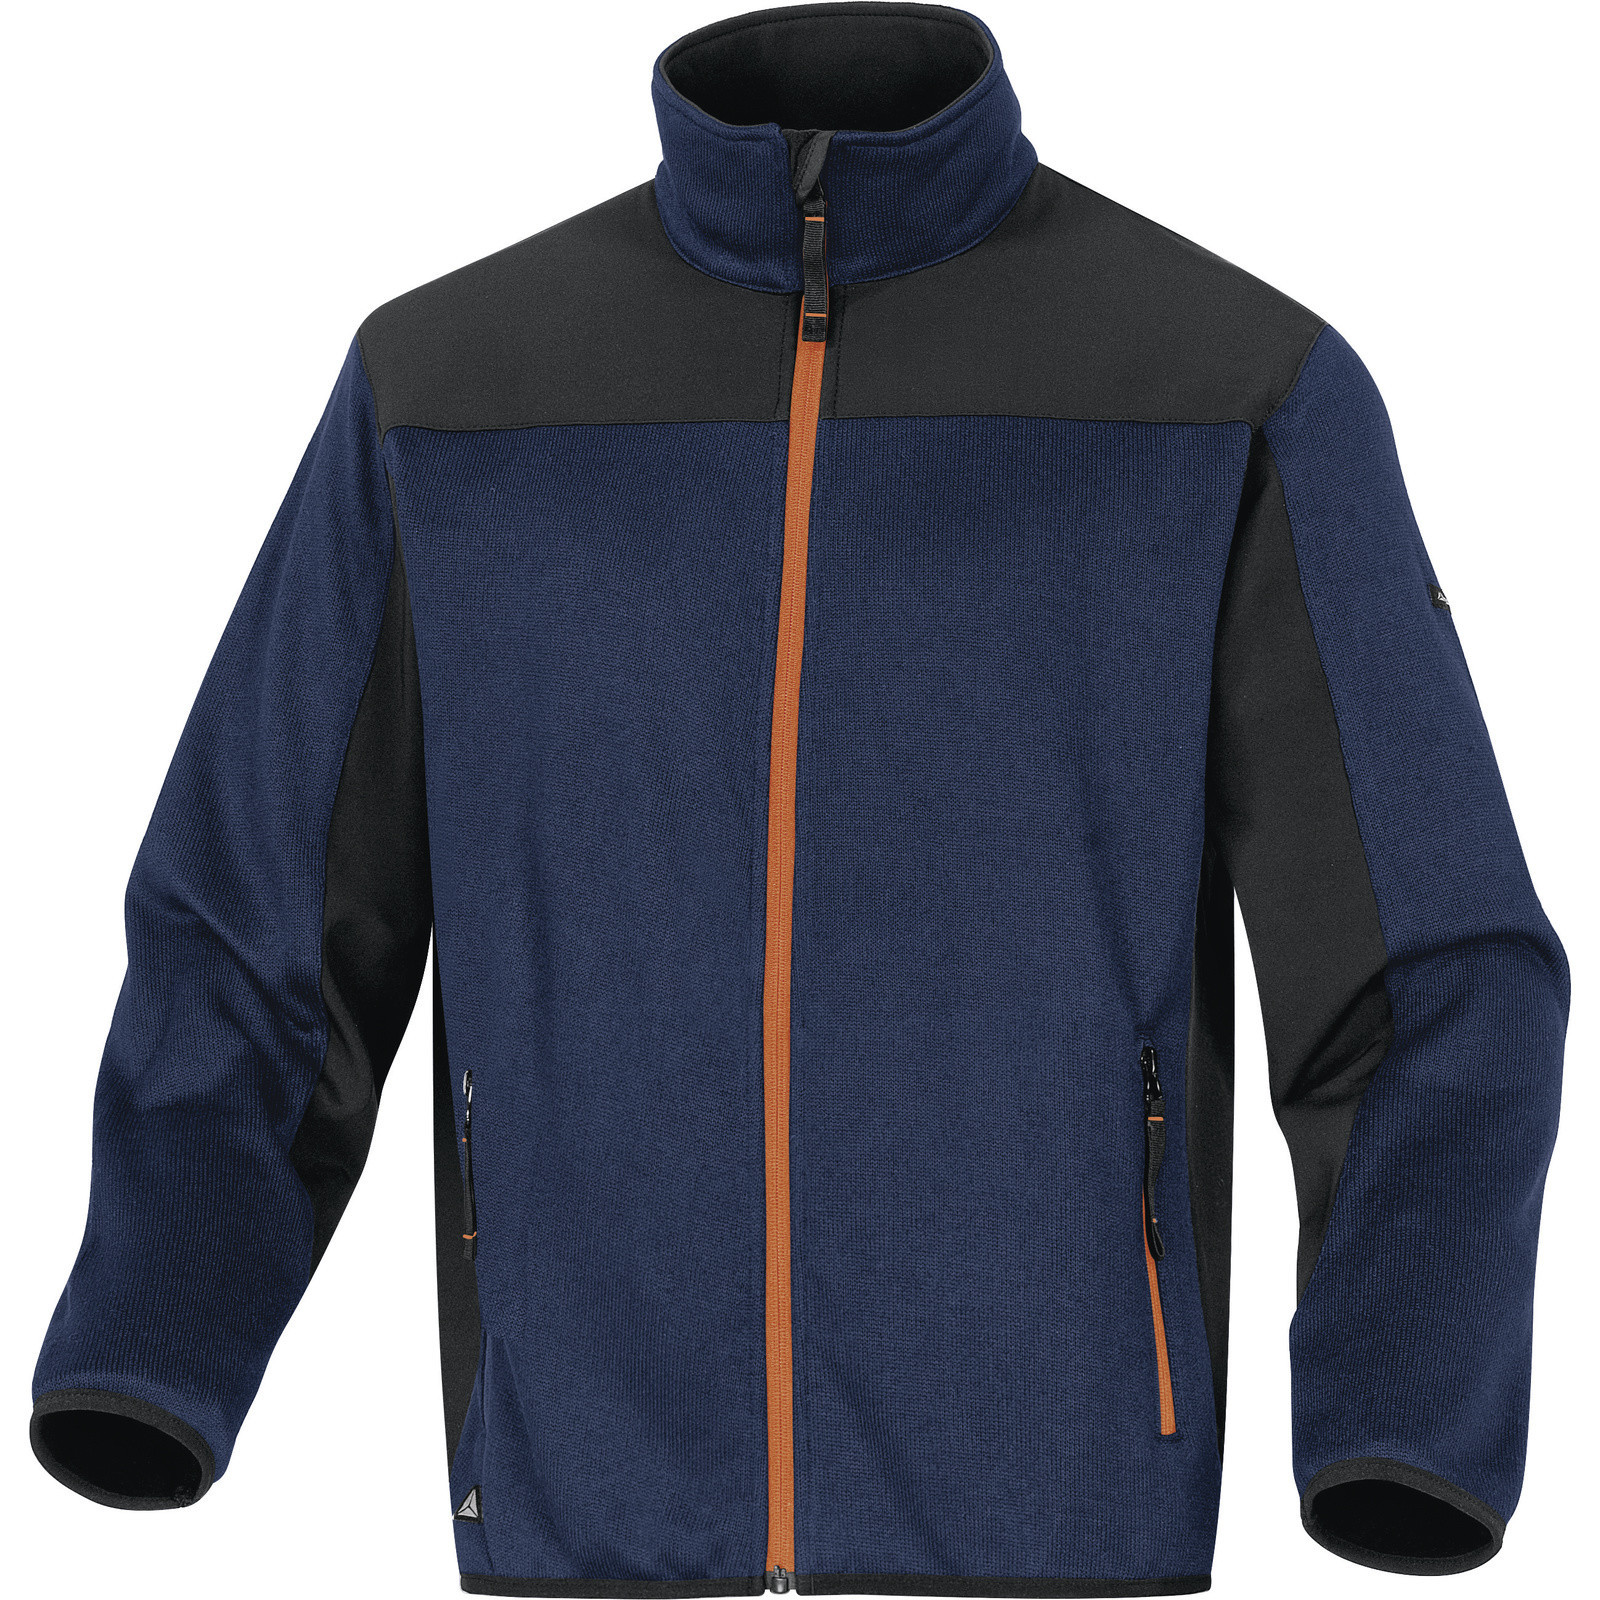 Softshellovo-pleteninová bunda Delta Plus Beaver - veľkosť: XXL, farba: nám. modrá/oranžová